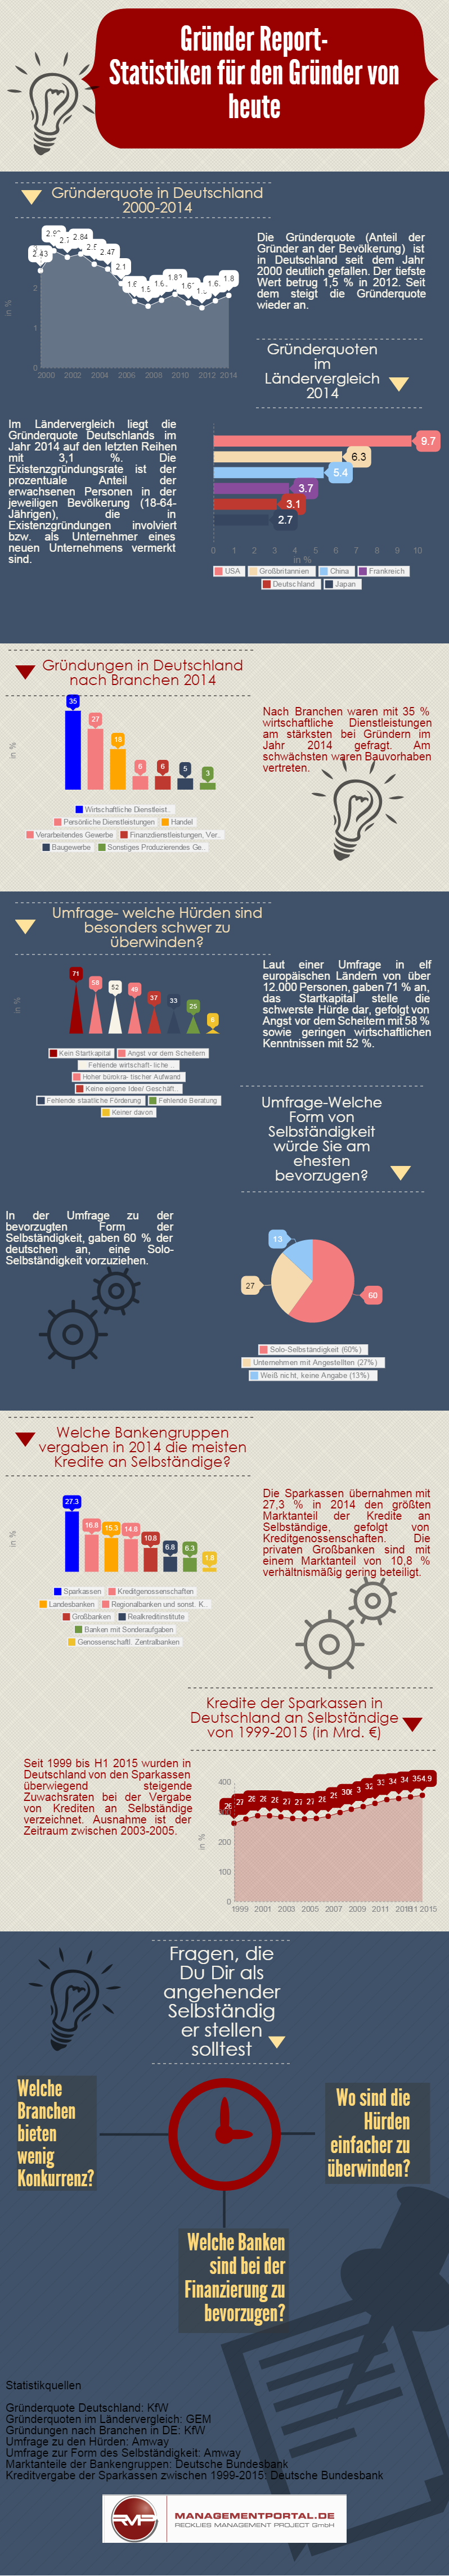 Infografik Statistiken zum Gründerverhalten in Deutschland und der EU